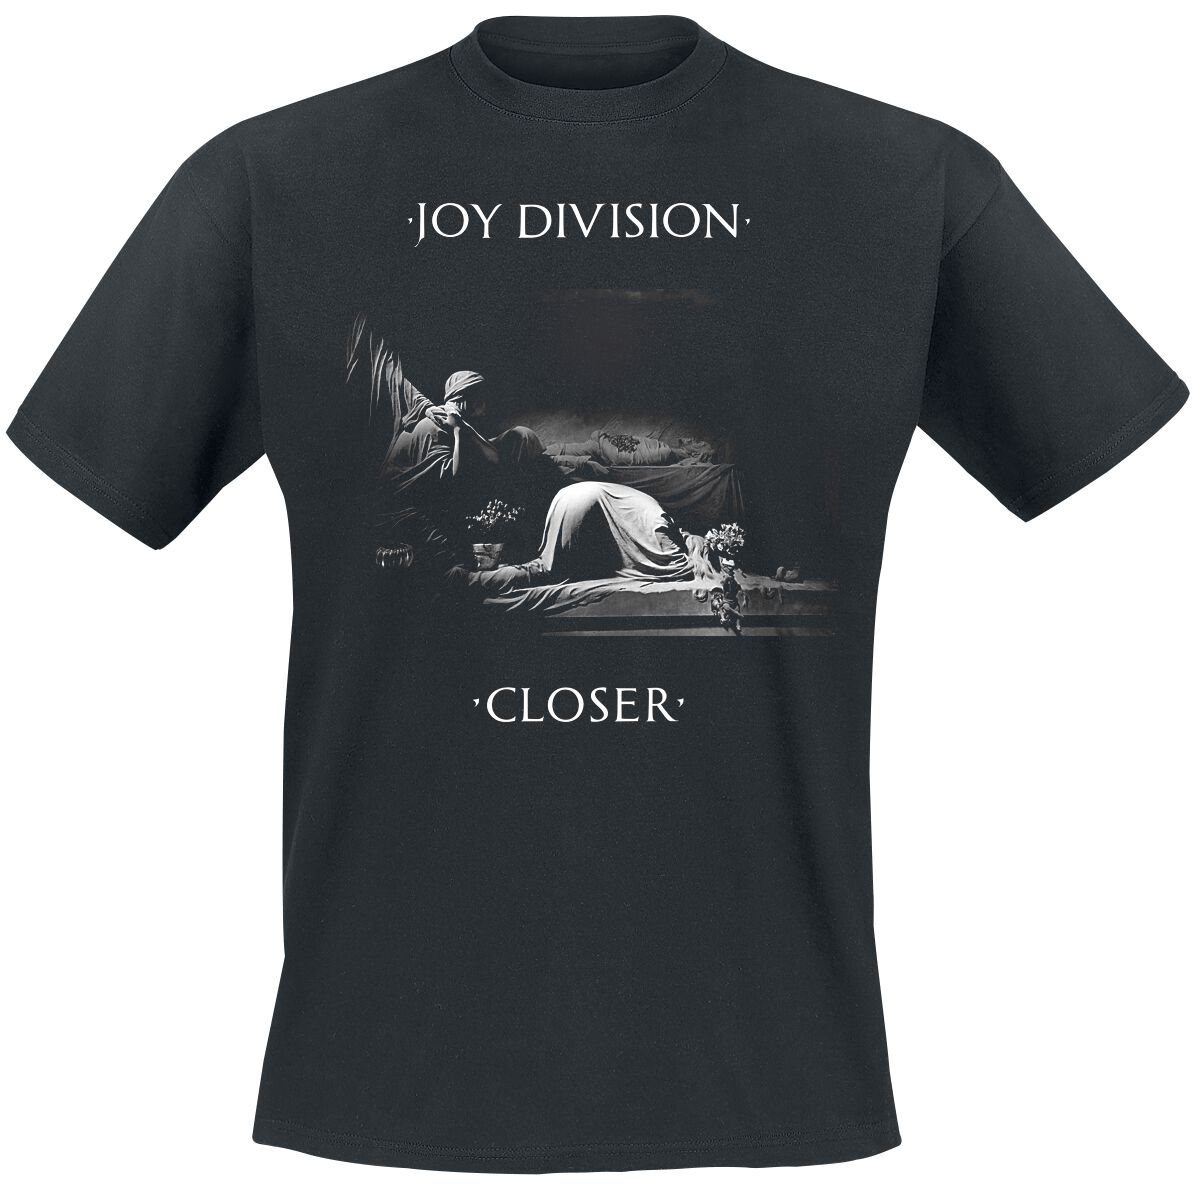 Joy Division T-Shirt - Classic Closer - S bis XXL - für Männer - Größe S - schwarz  - Lizenziertes Merchandise!